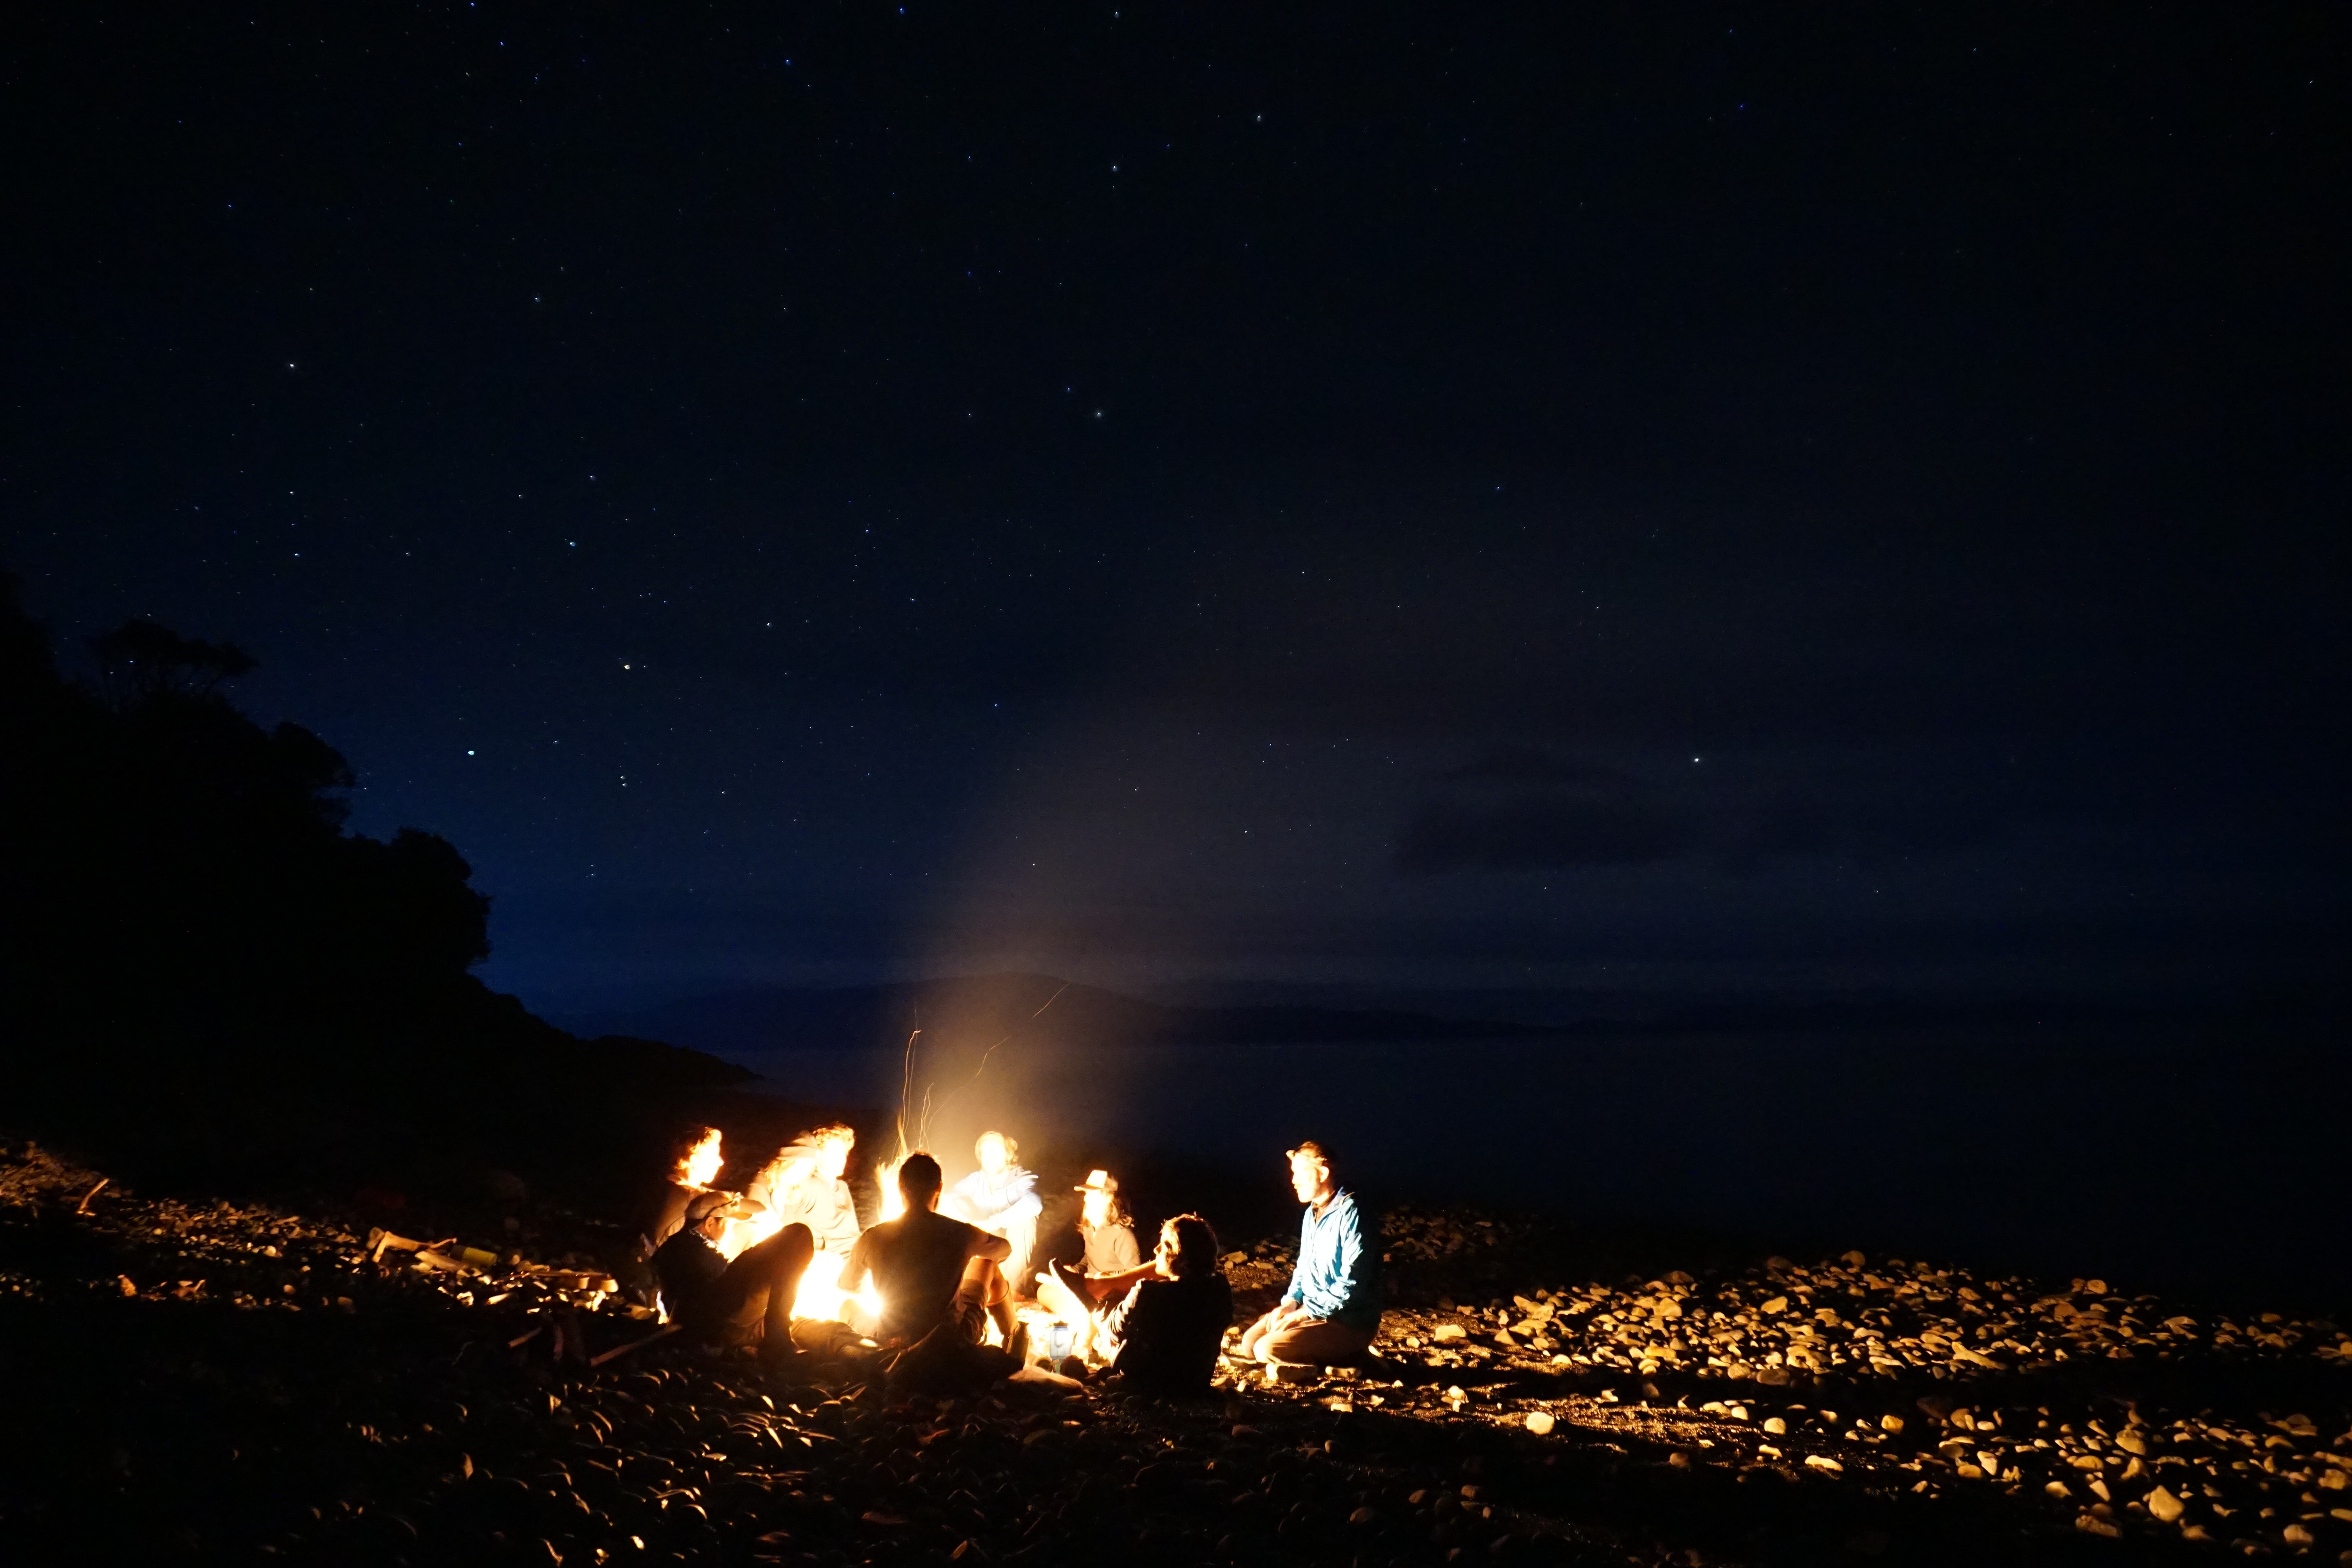 Sitting around a campfire